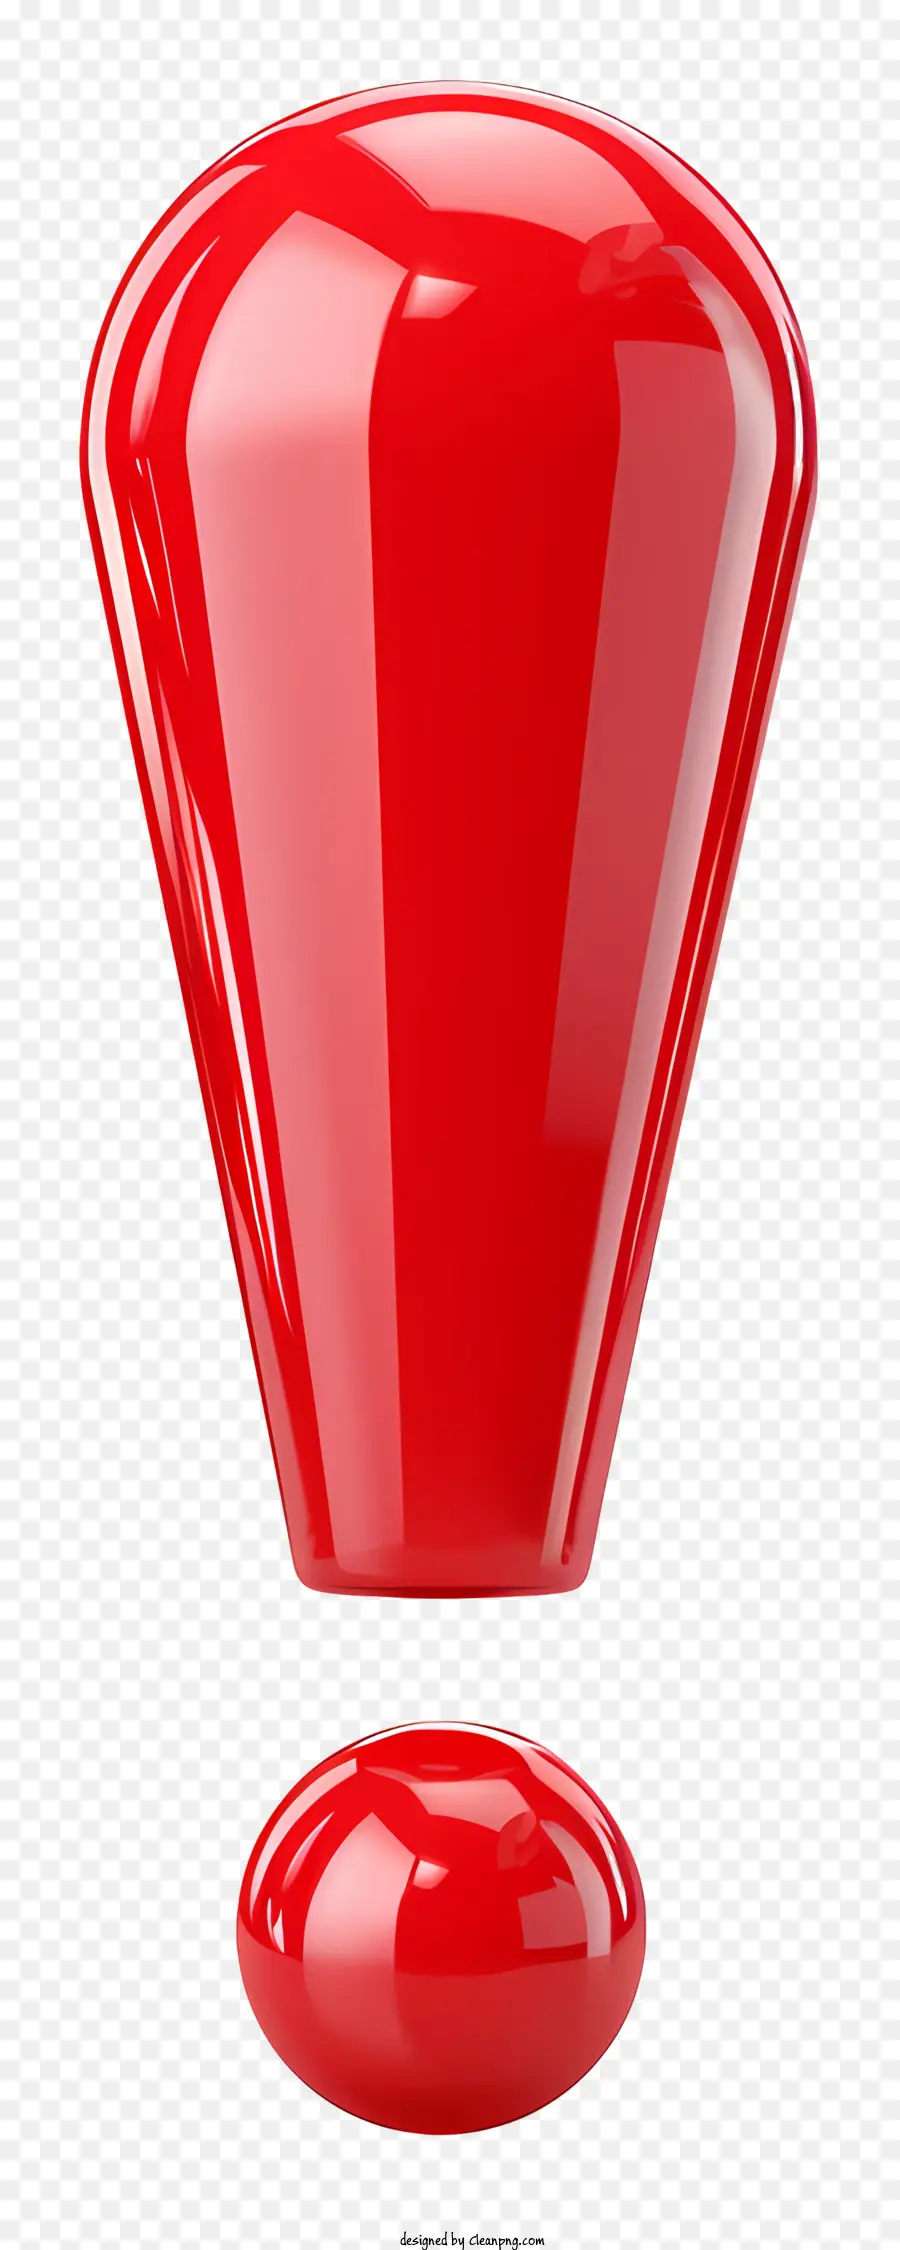 esclamazione oggetto rosso superficie liscia sotto sfondo nero forma a pera - Oggetto rosso liscio su sfondo nero